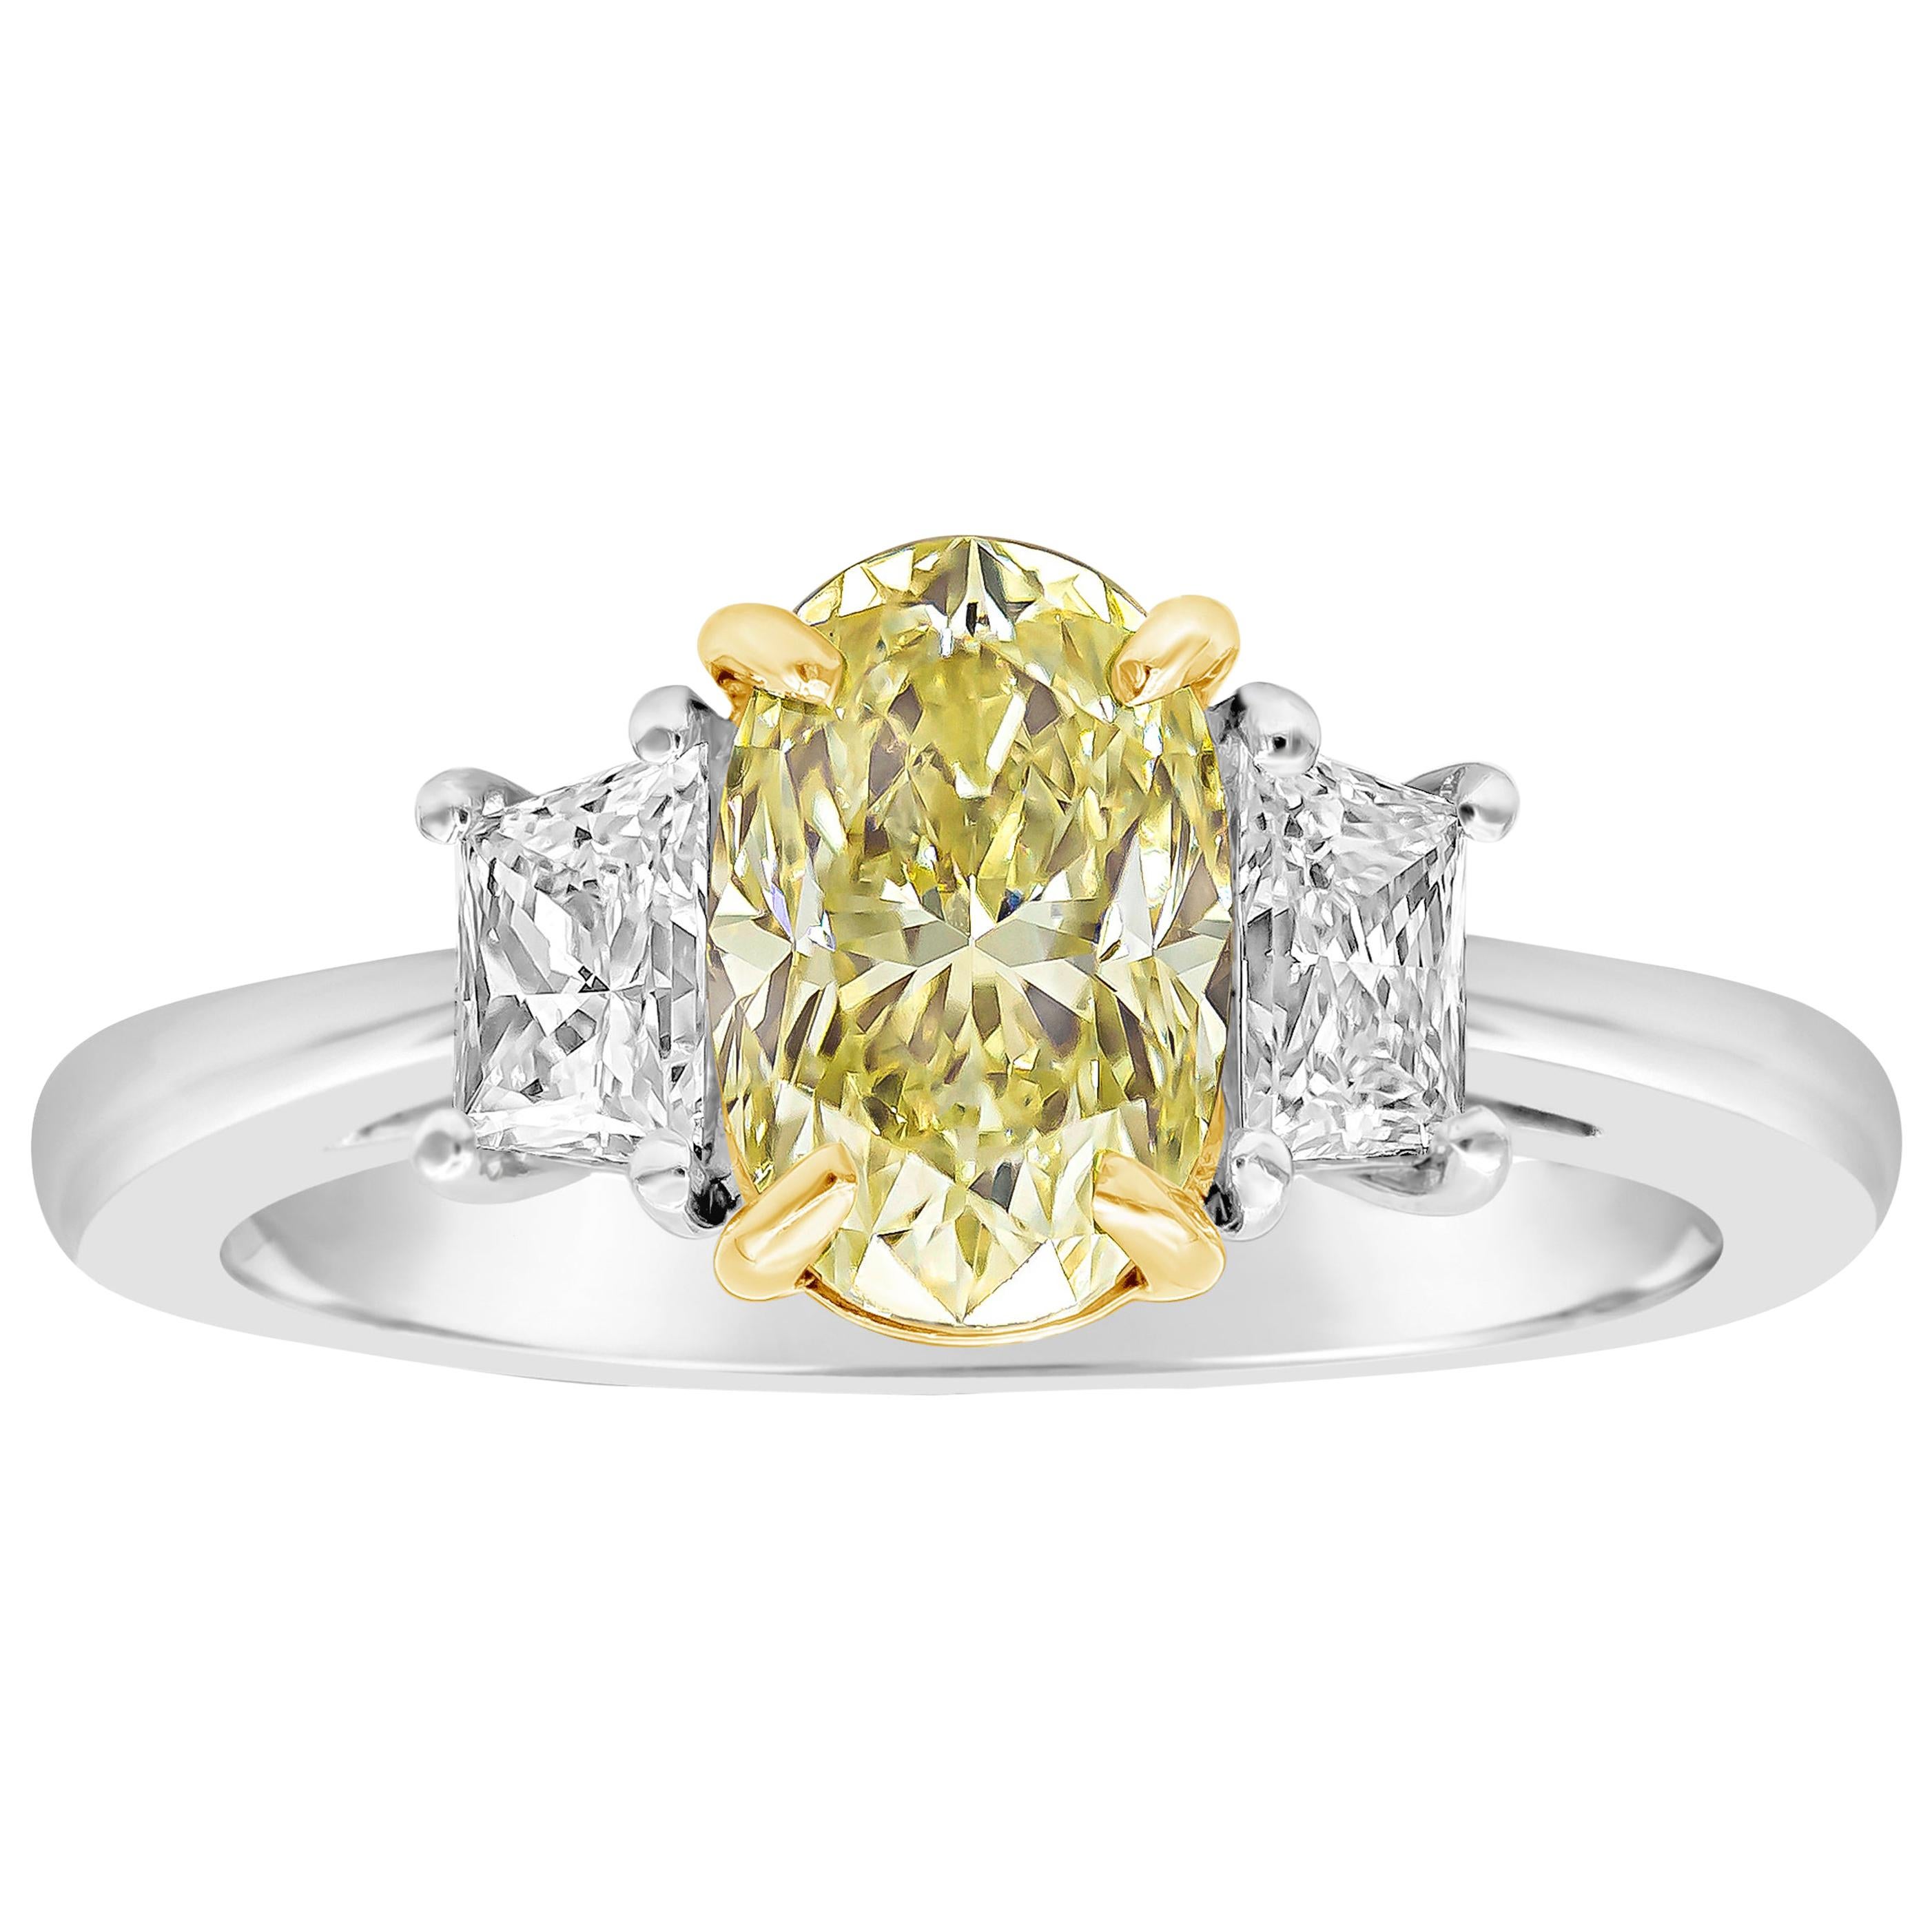 Verlobungsring mit drei Steinen, GIA-zertifizierter 1,57 Karat gelber Diamant im Ovalschliff